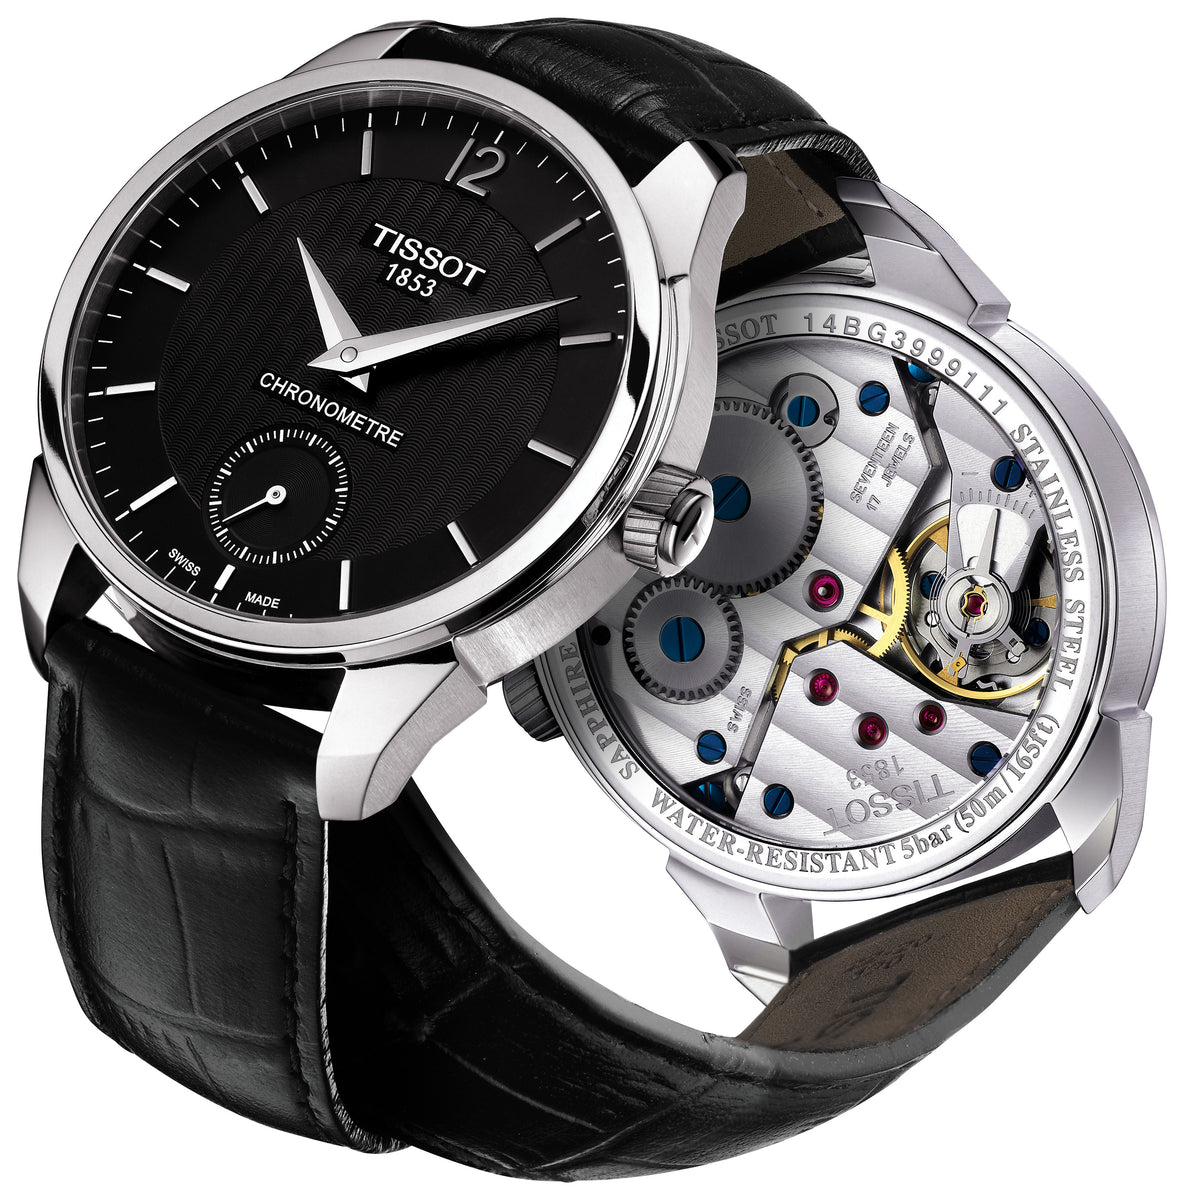 19,270円Tissot T-Complication Chronometer